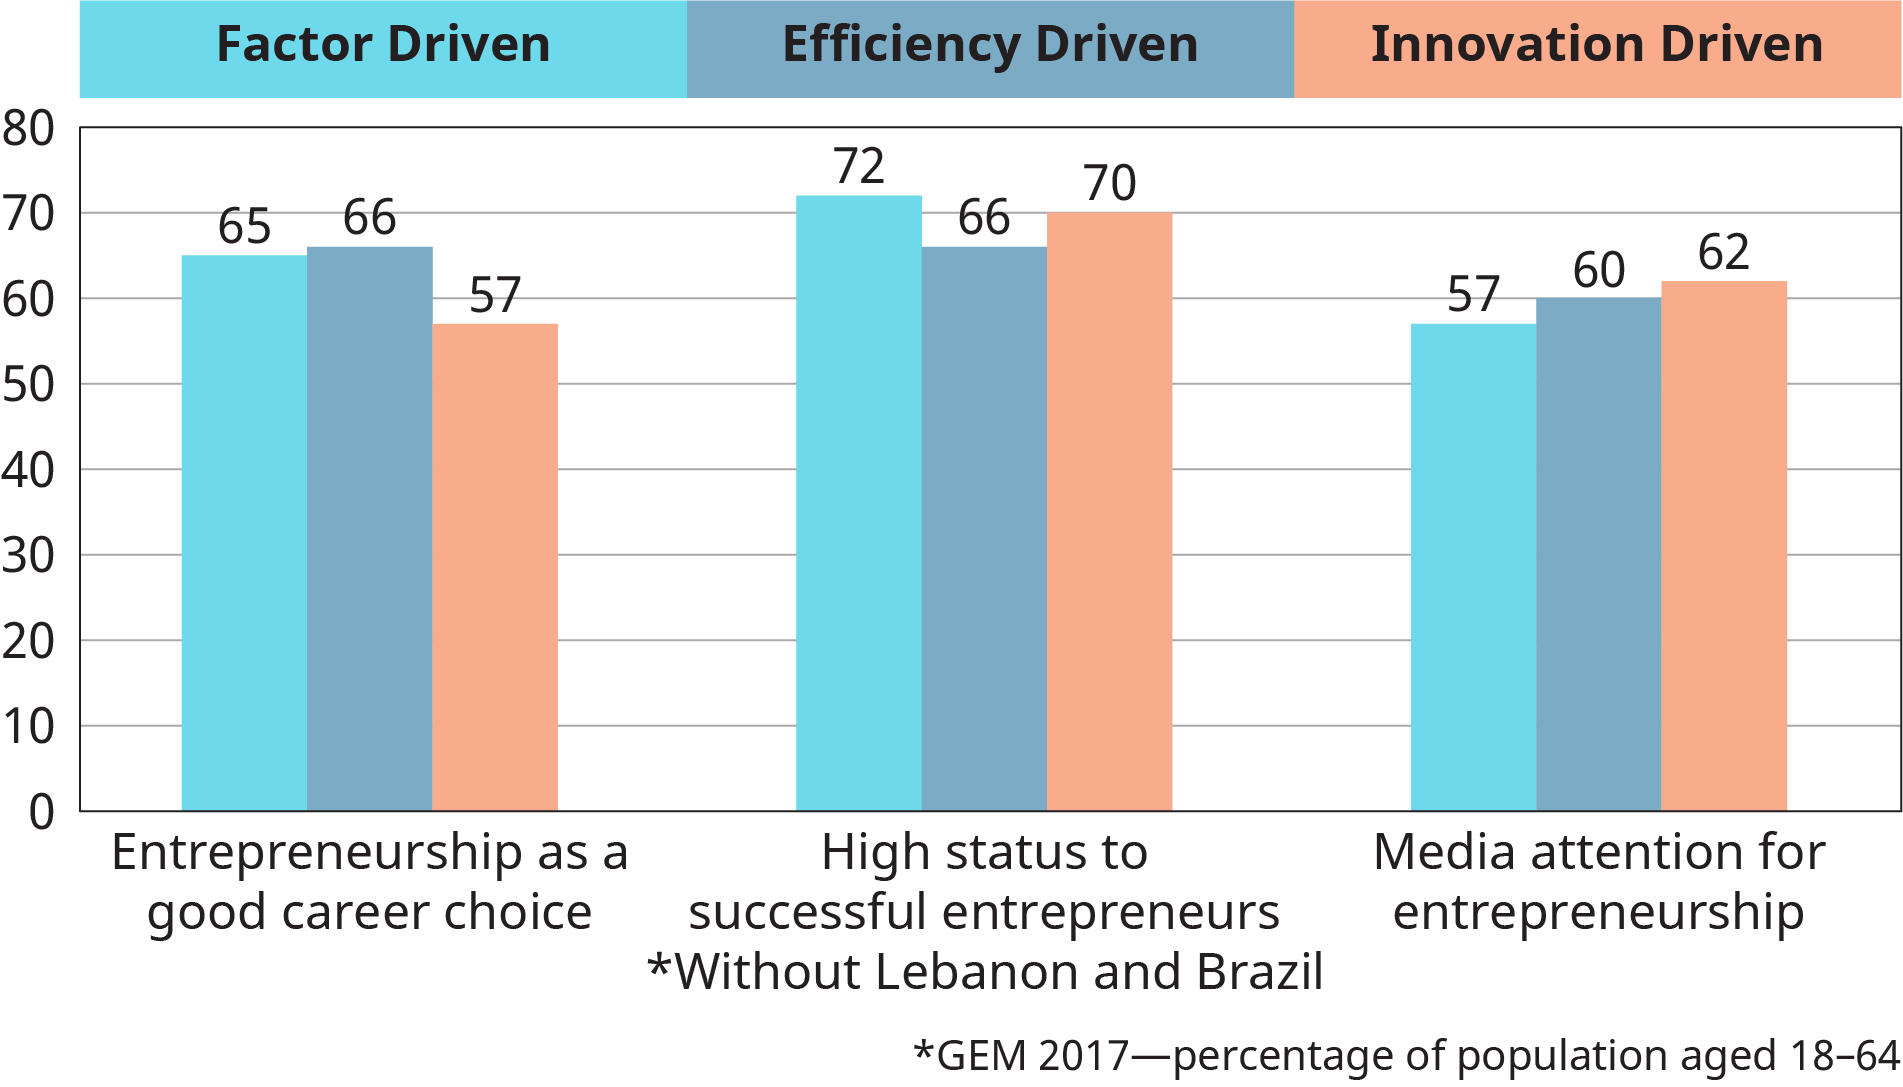 يرسم التمثيل البياني متوسطات مجموعة التنمية للقيم المجتمعية حول ريادة الأعمال بناءً على العوامل الدافعة والكفاءة والابتكار.